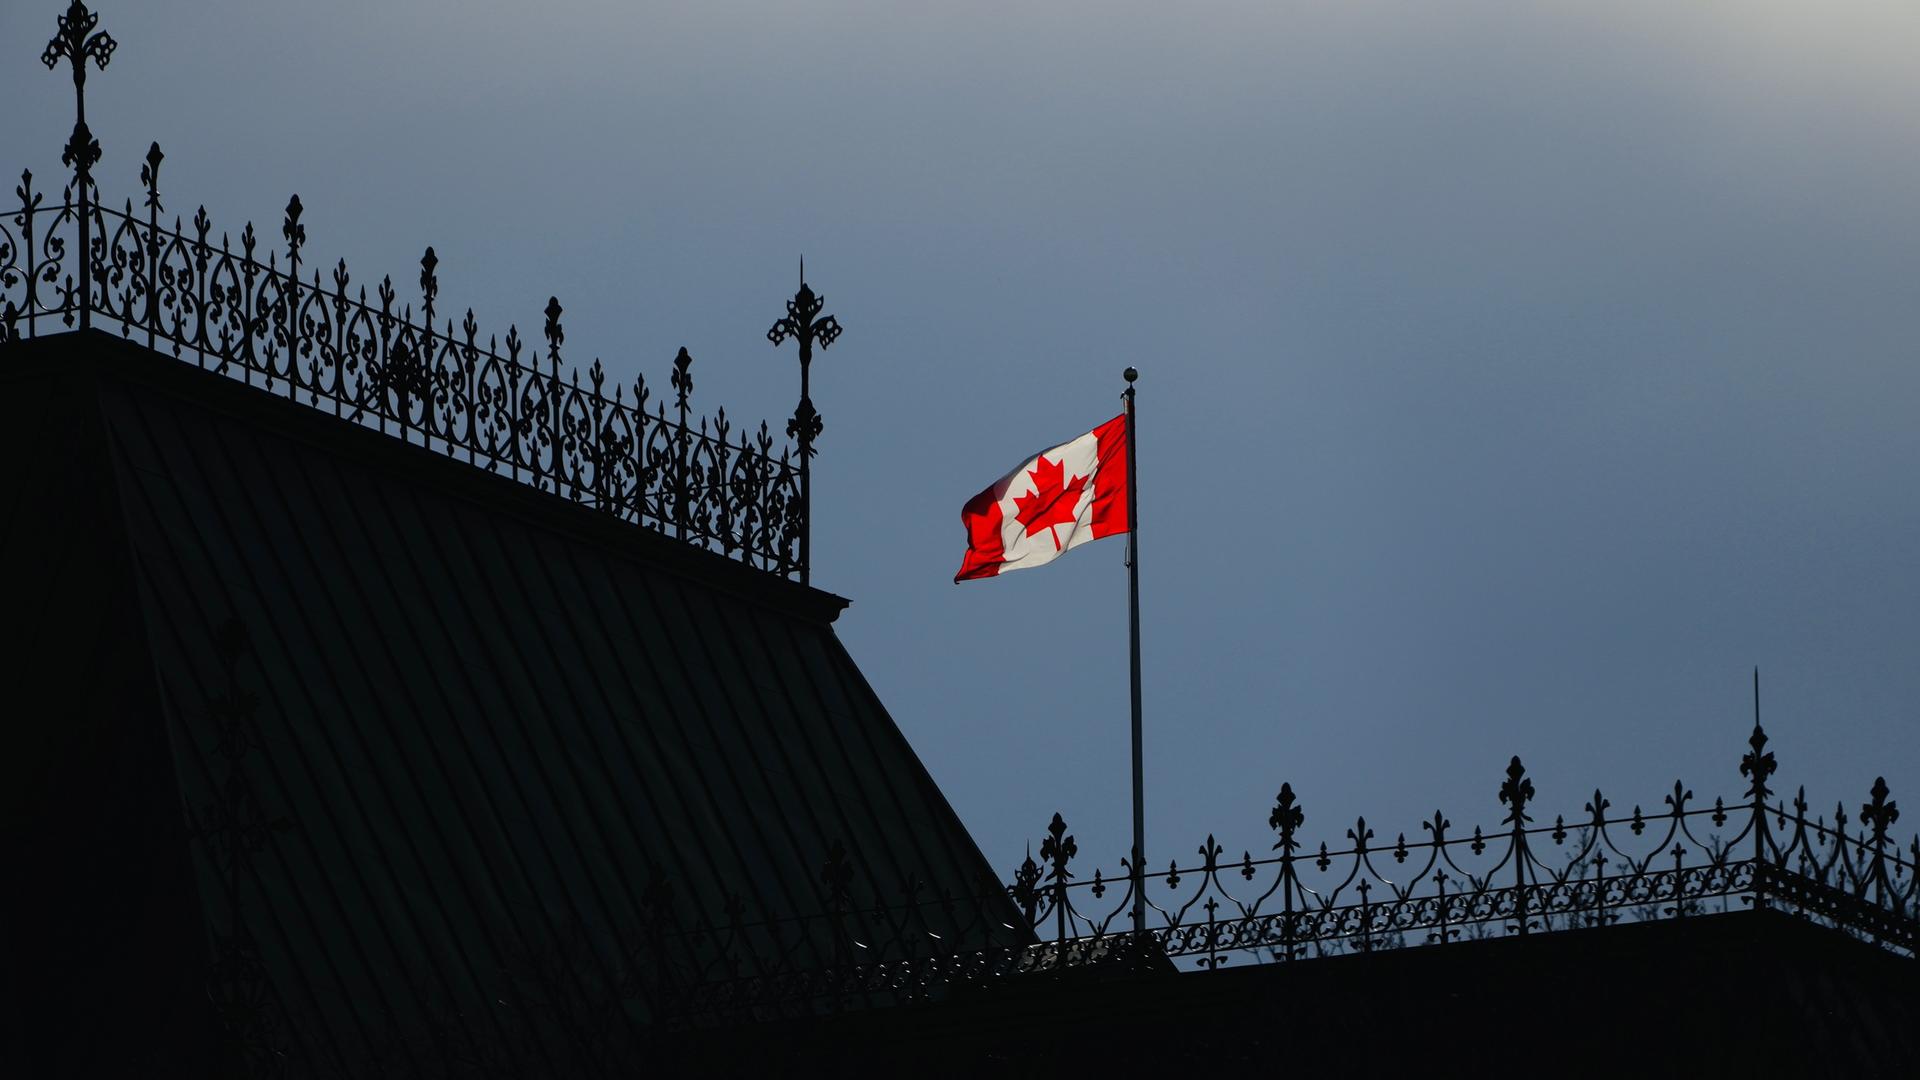 Zu sehen ist die kanadische Flagge auf einem Hausdach